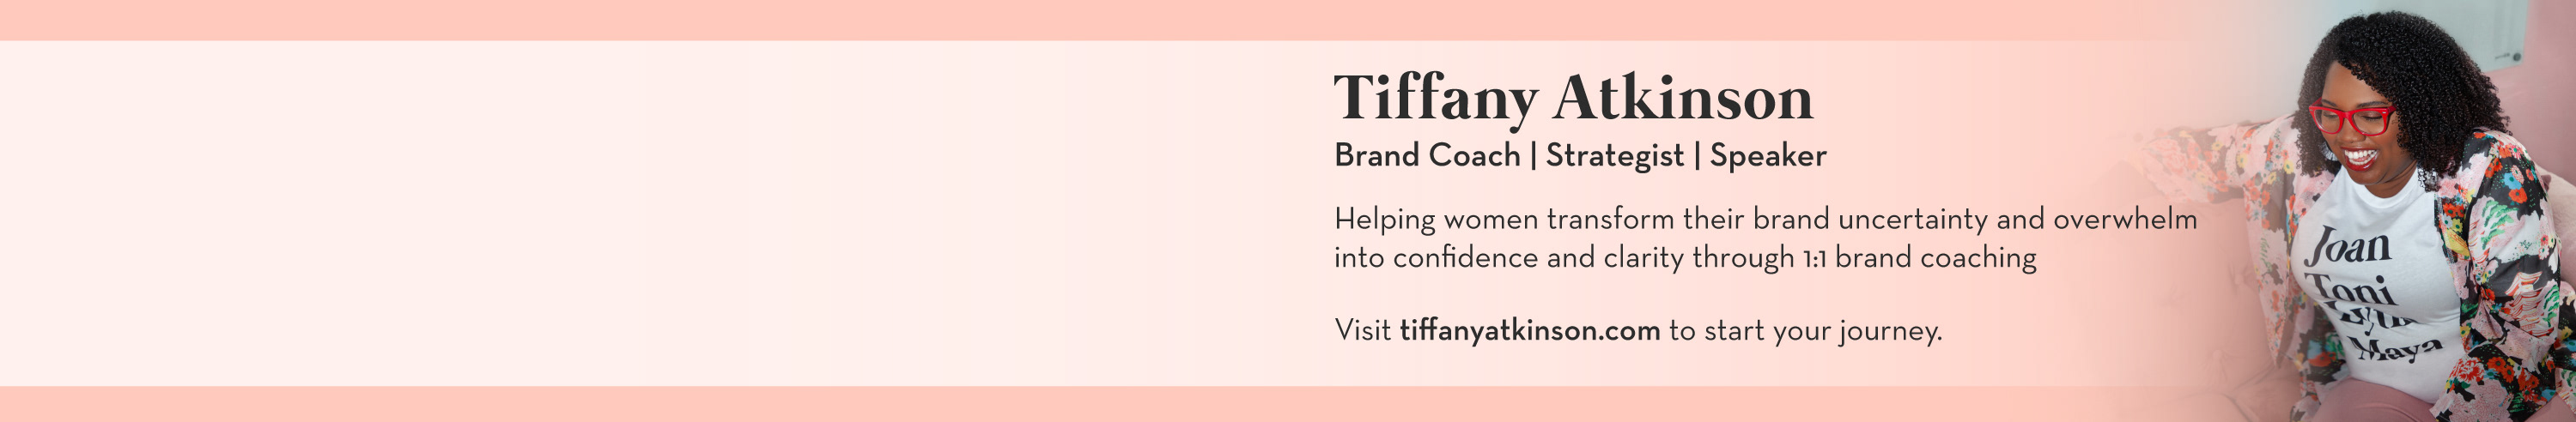 Profil-Banner von Tiffany Atkinson